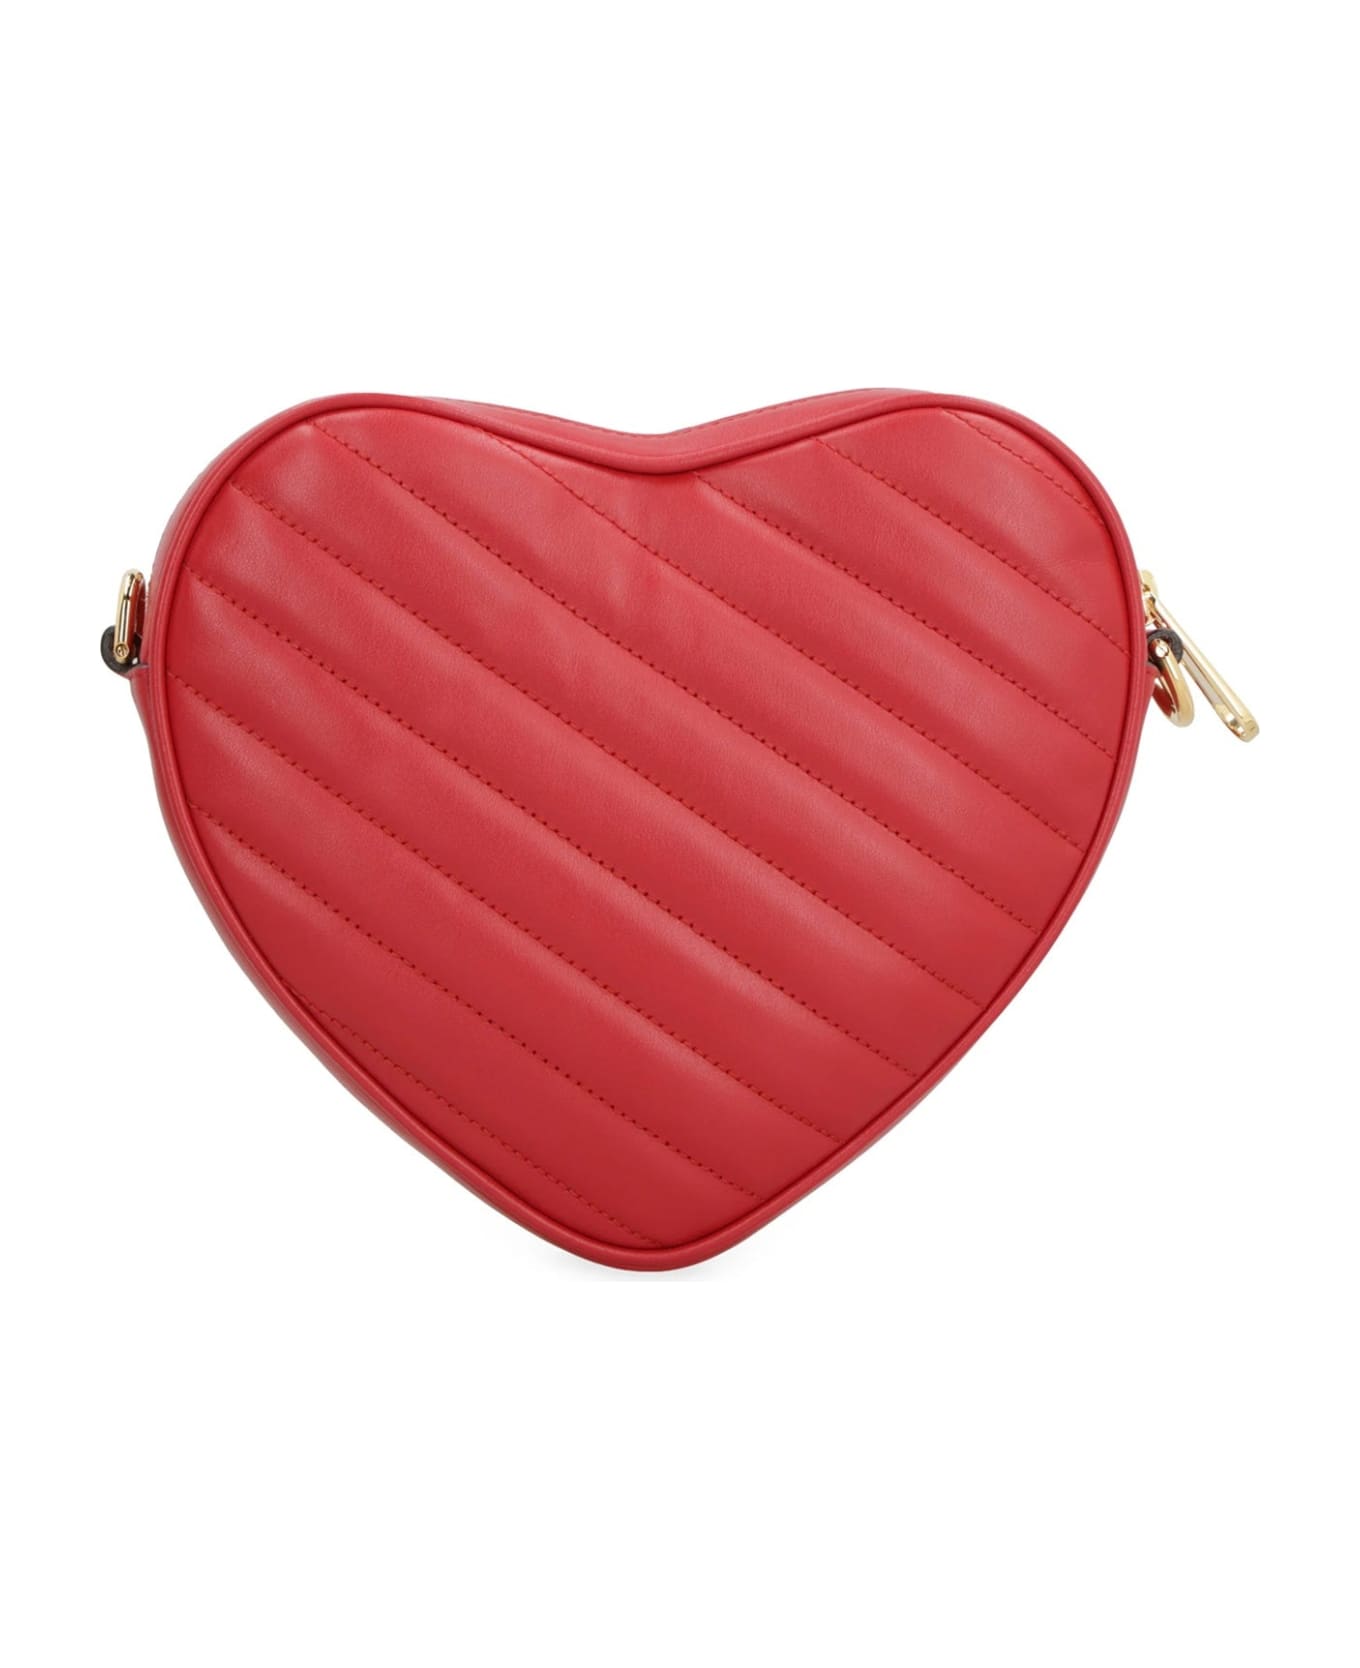 Gucci Heart Shoulder Bag - Red